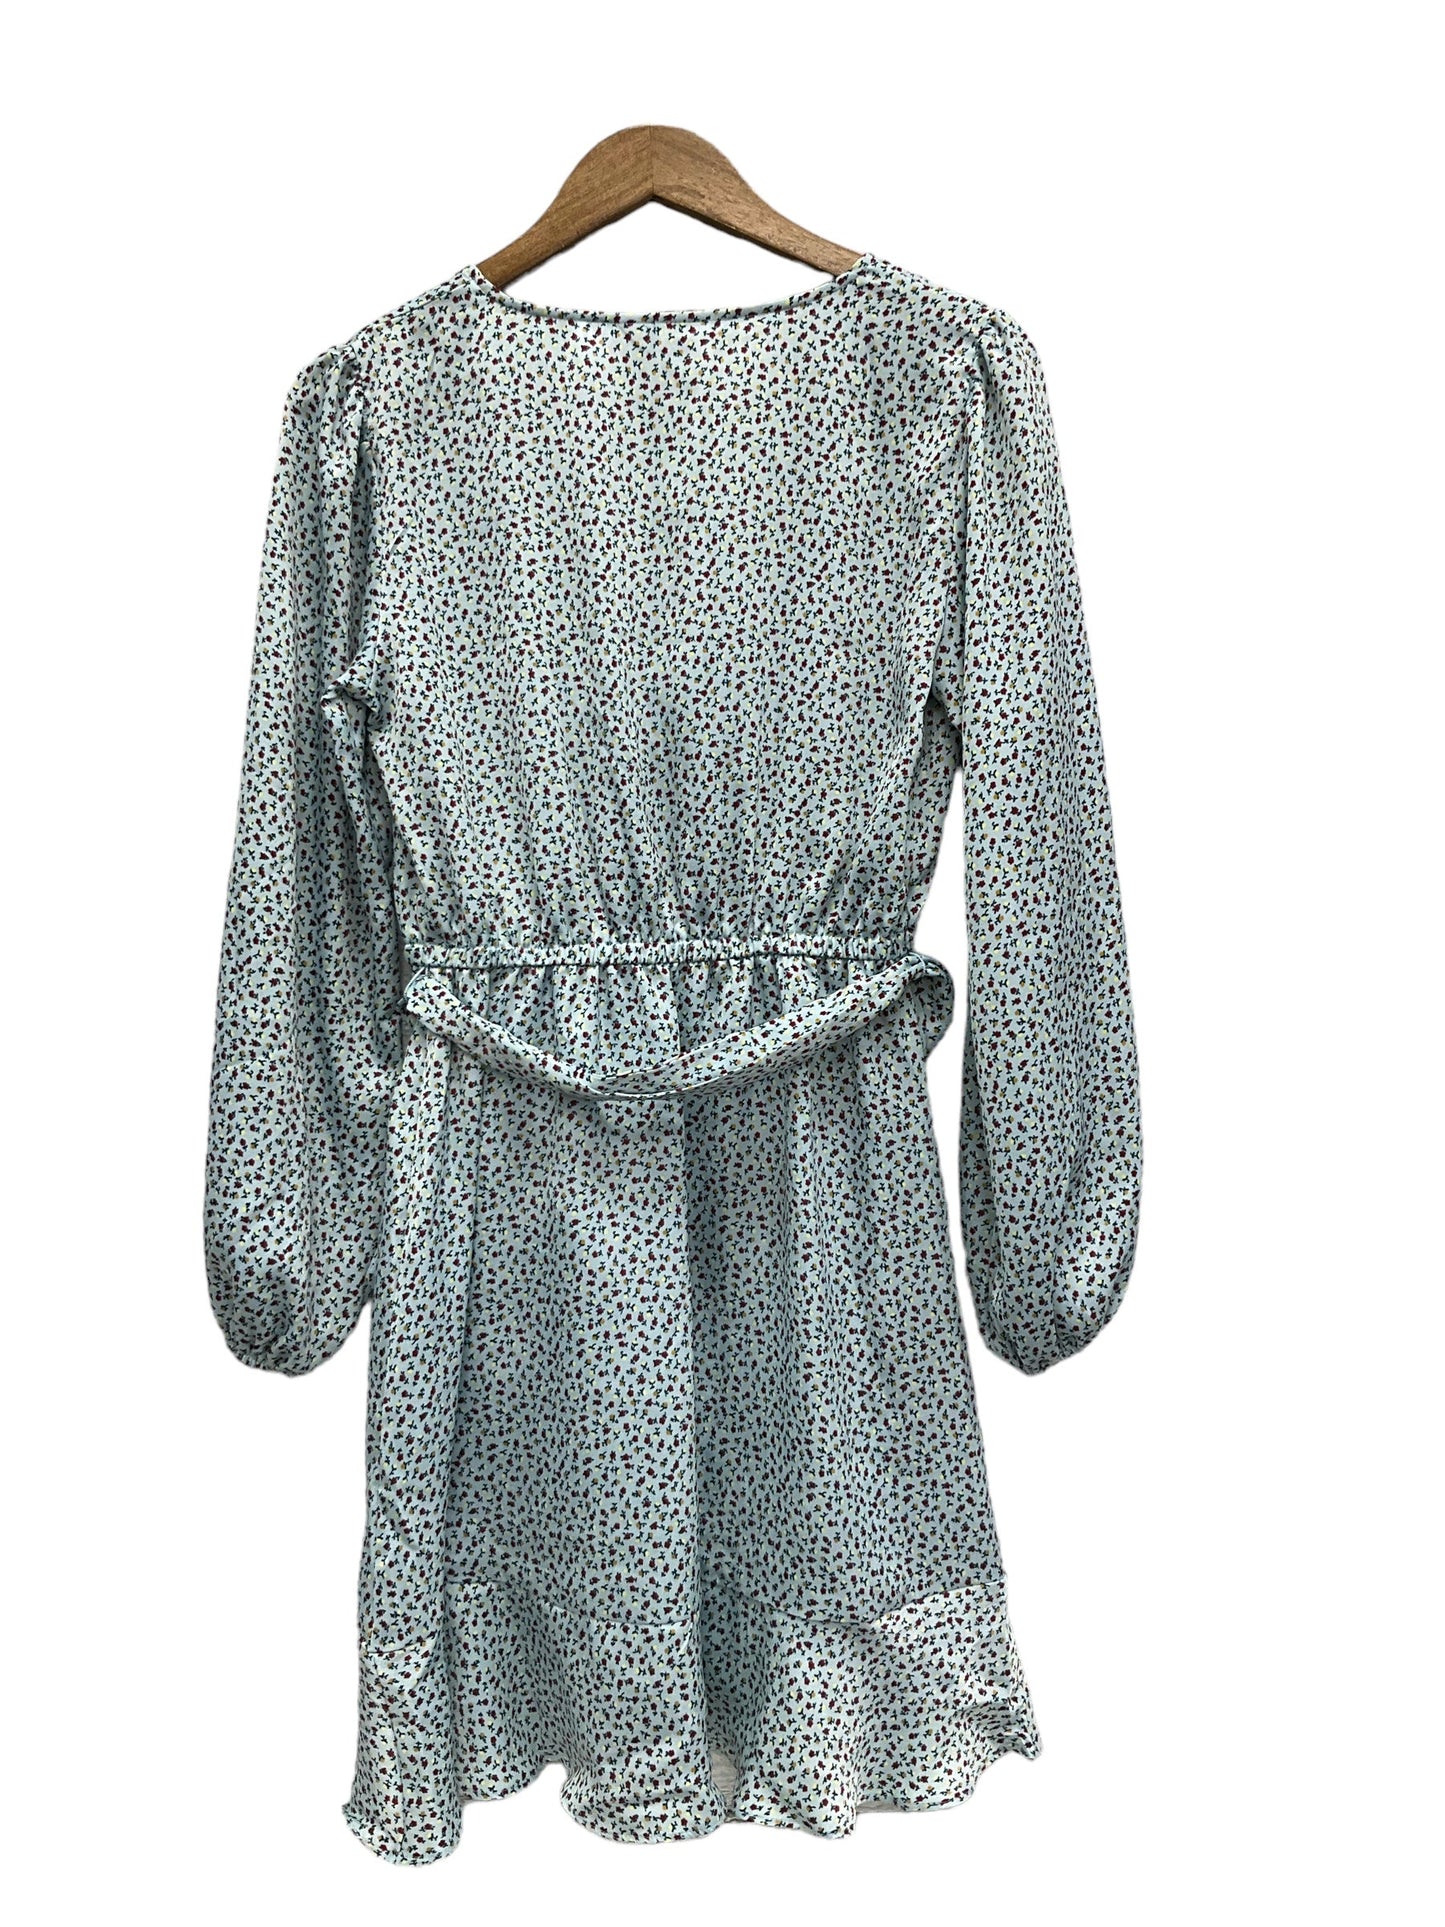 Dress Casual Midi By Lc Lauren Conrad  Size: S